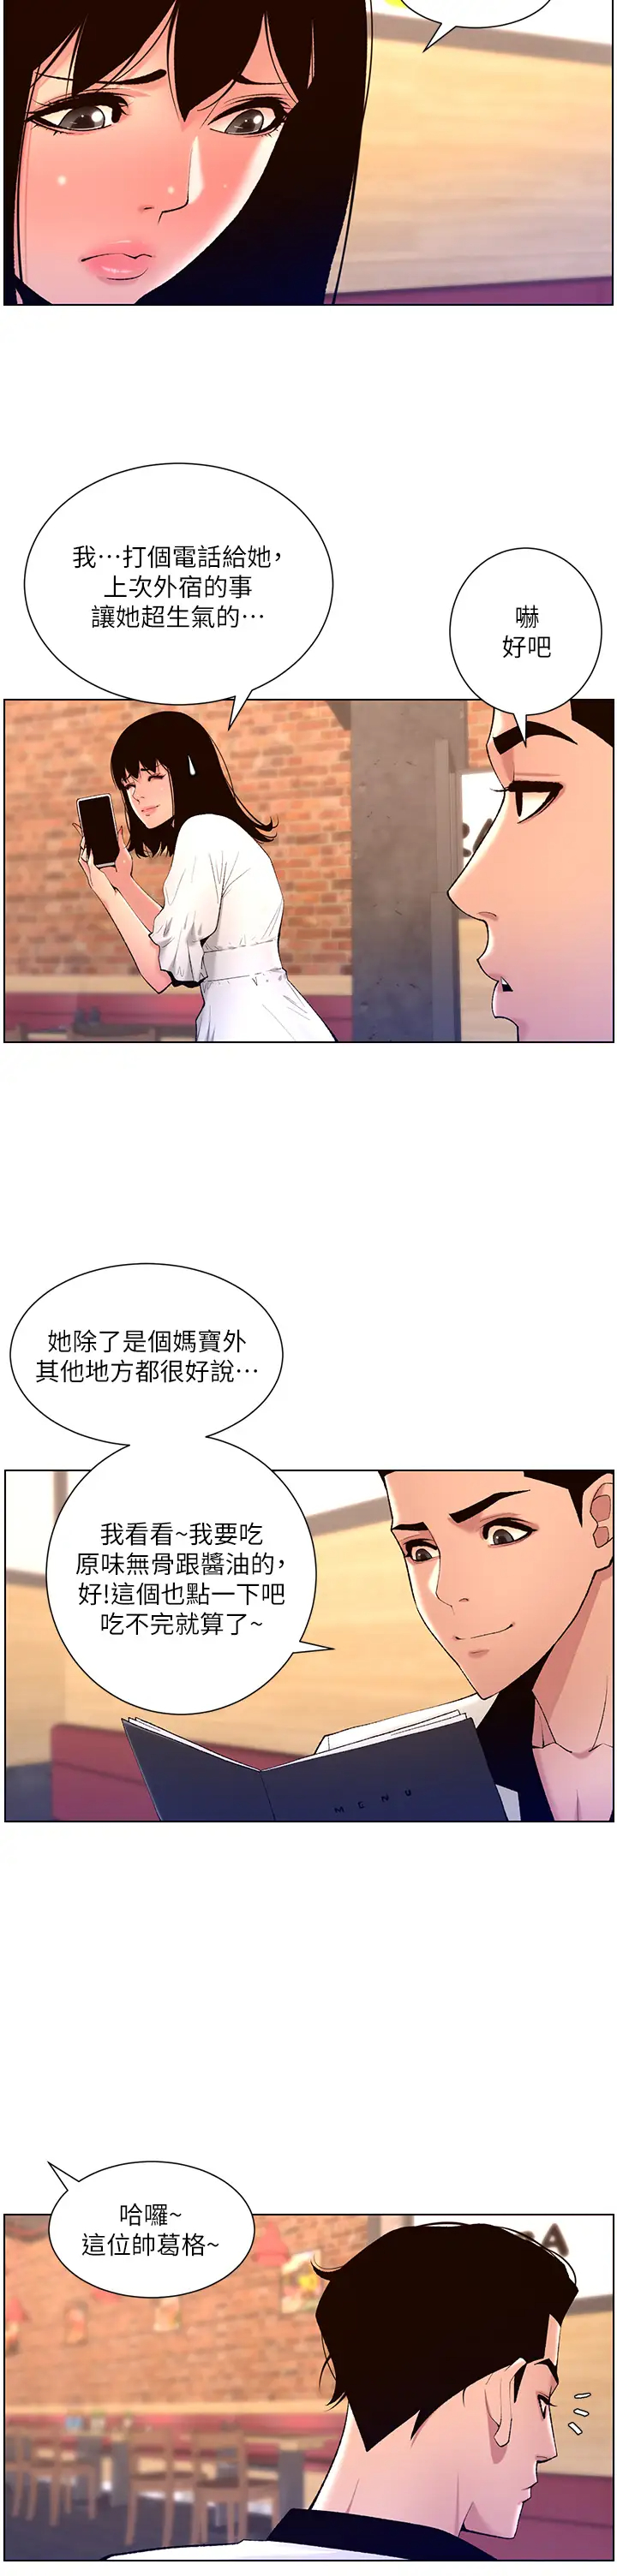 韩国污漫画 帝王App 第27话 让正妹柜姊爽到上天堂 30